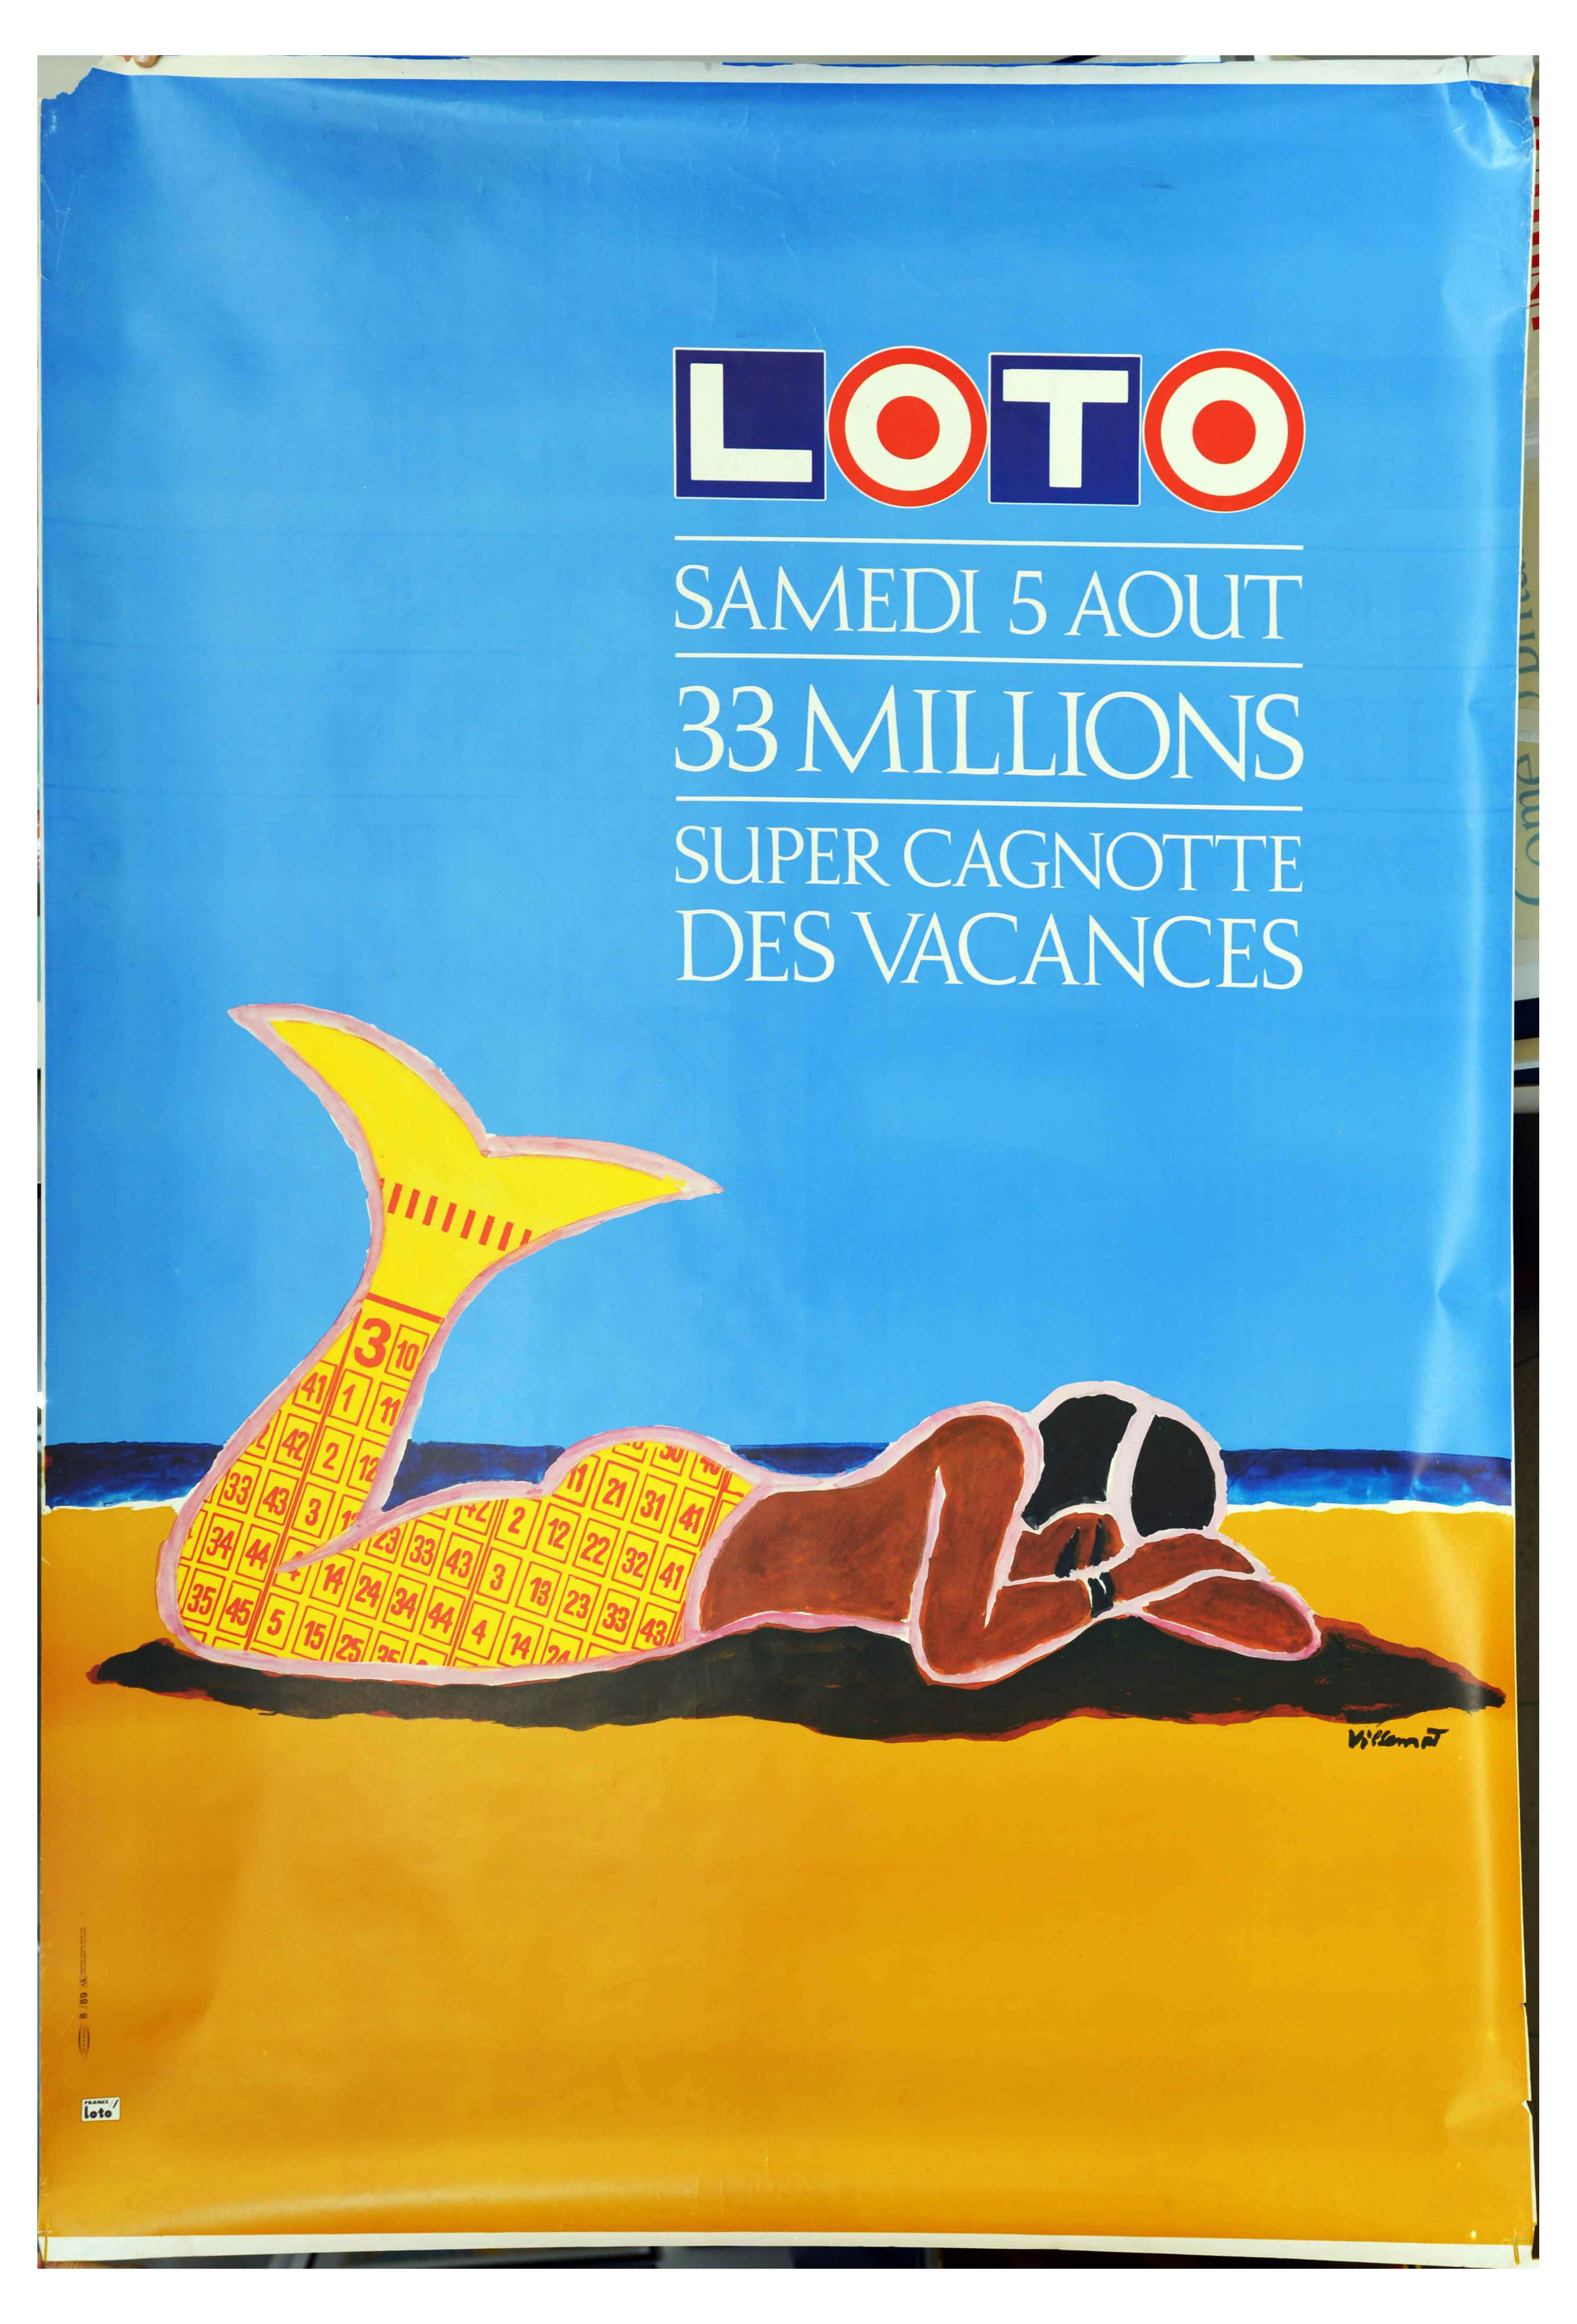 Advertising Poster France Loto Mermaid Beach Villemot